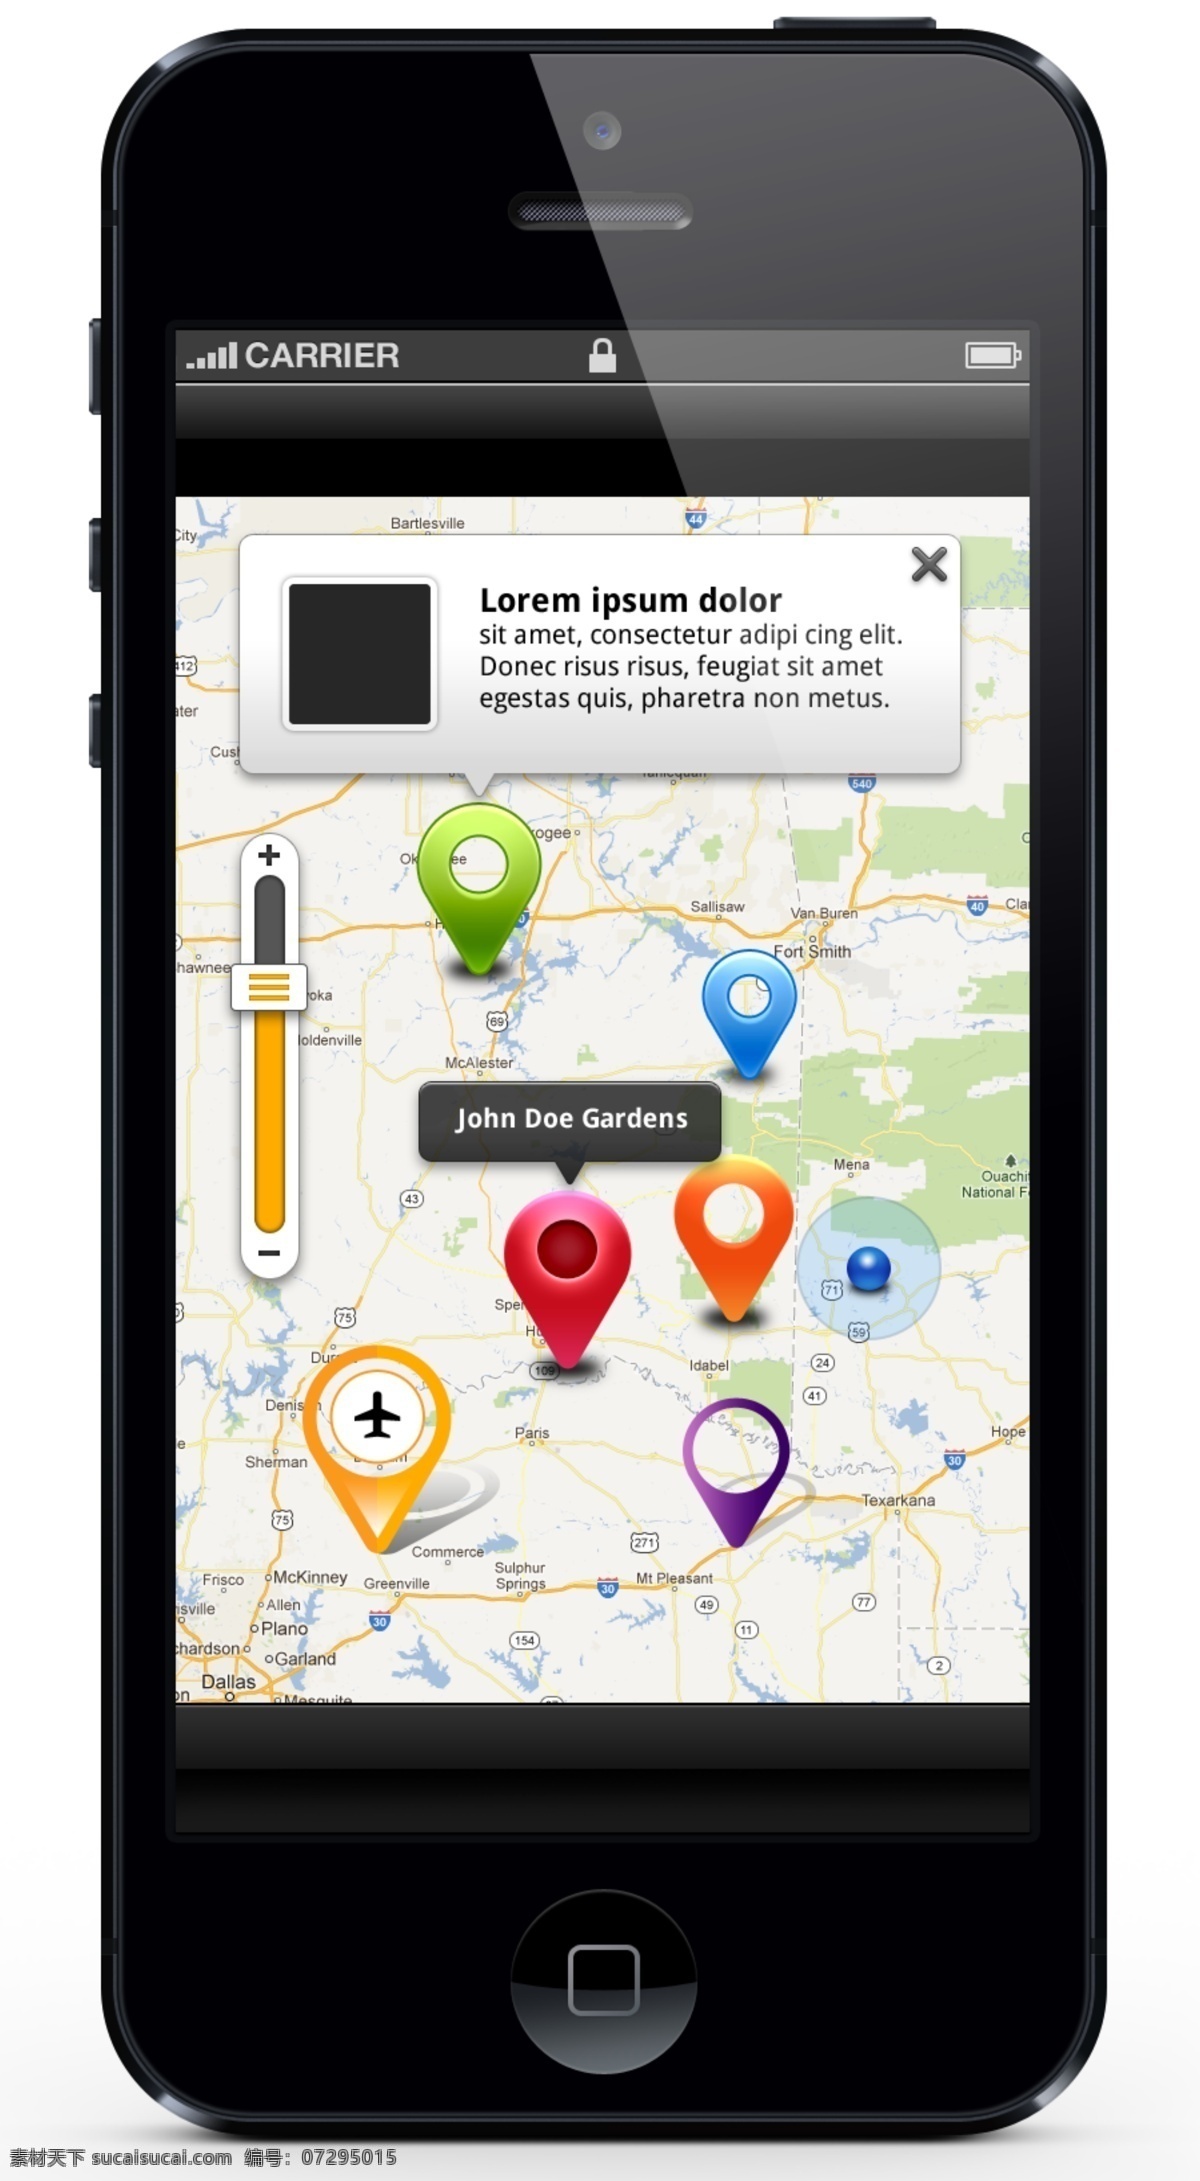 app gui iphone 其他模板 手机模版 手机软件 网页模板 源文件 手机 地形图 导航 模板下载 地形图标注